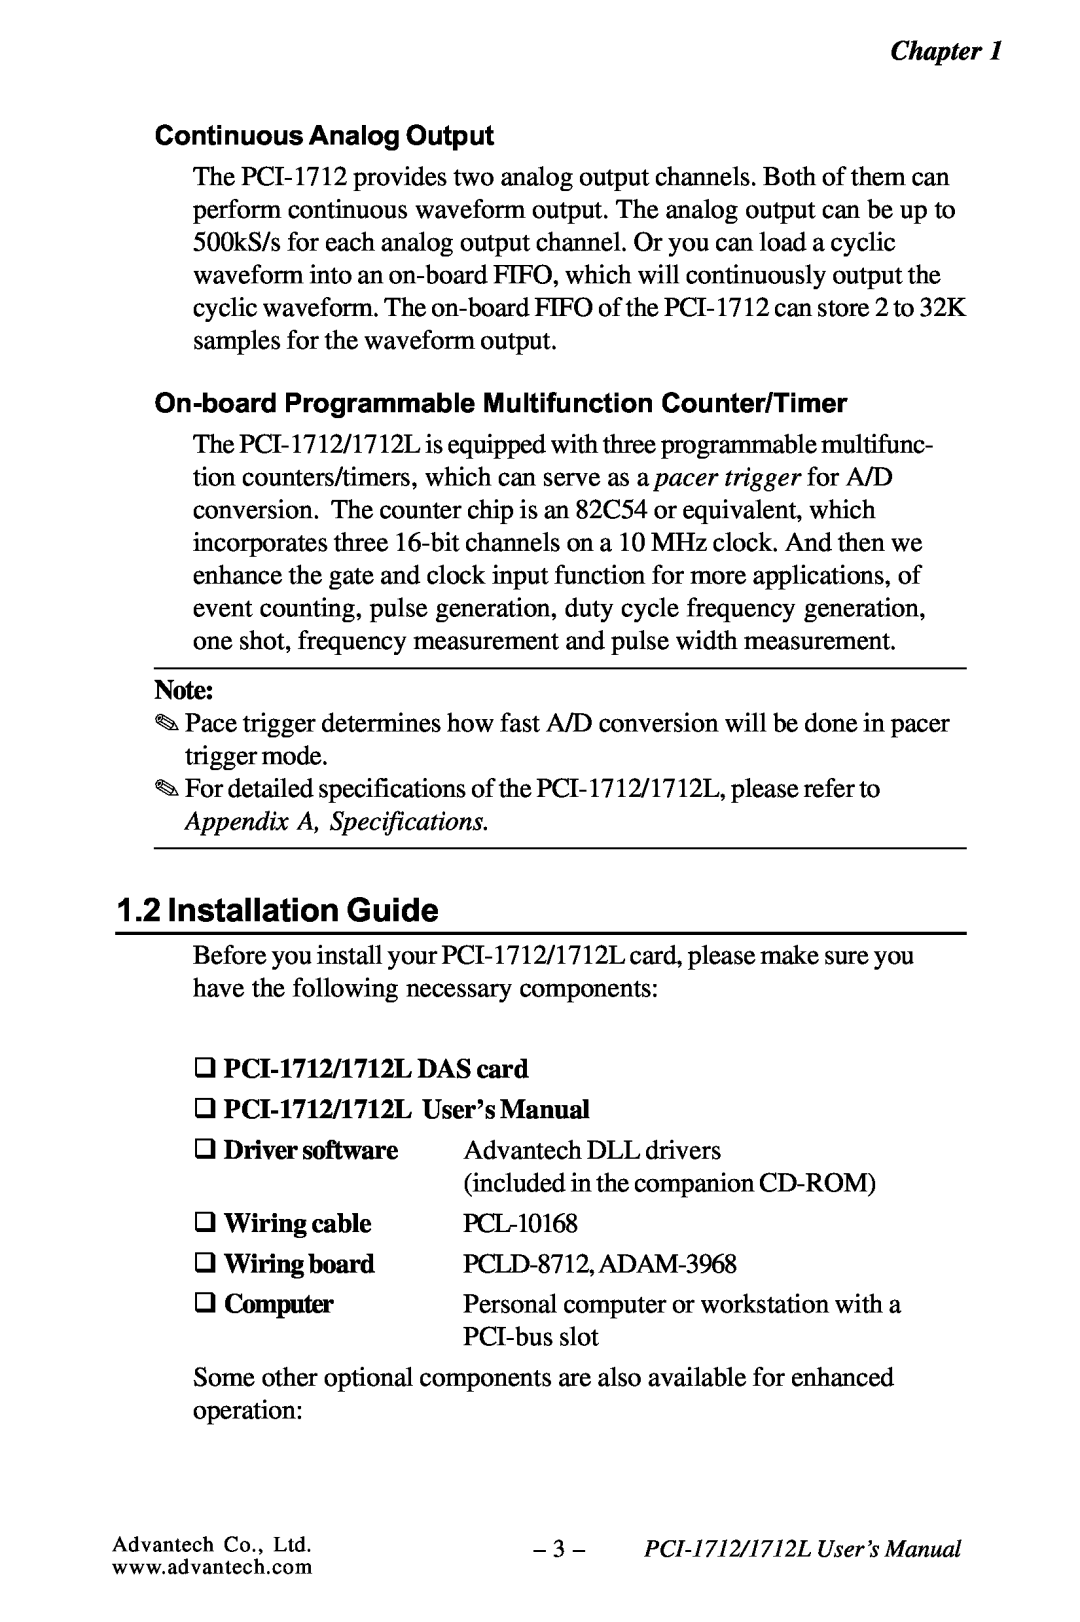 Konica Minolta PCI-1712L Installation Guide, q PCI-1712/1712L DAS card q PCI-1712/1712L User’s Manual, q Wiring cable 